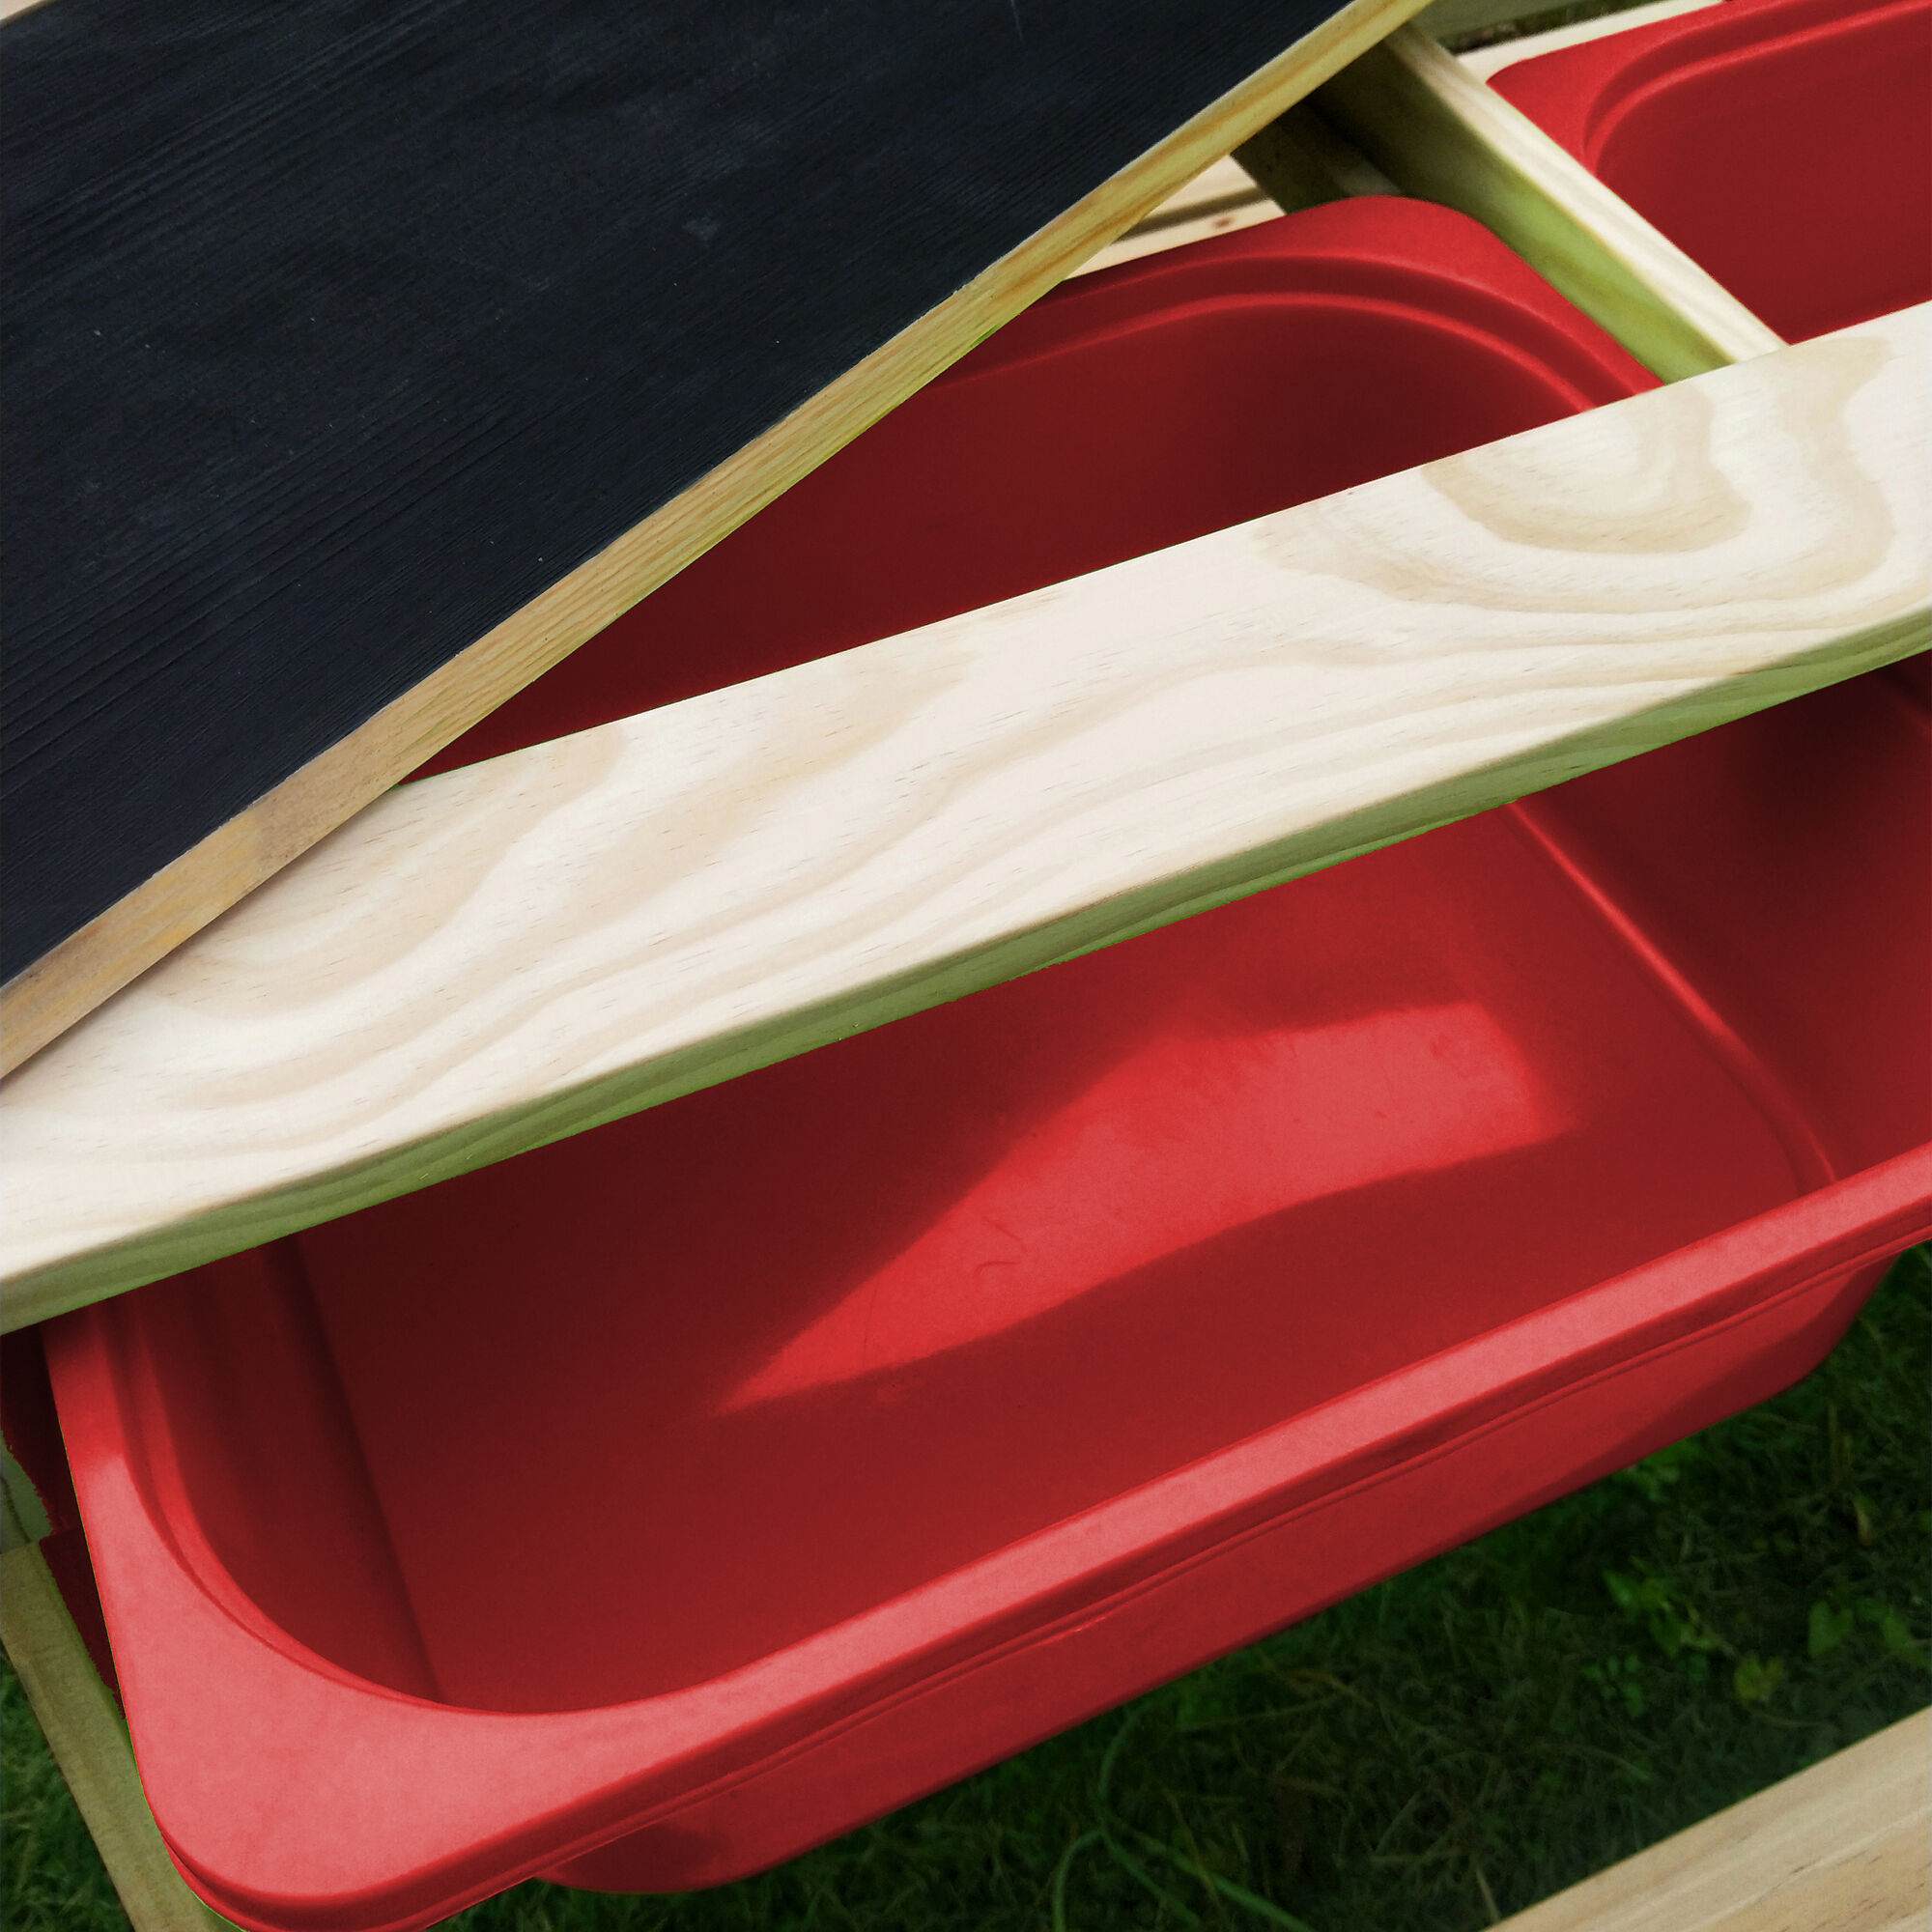 Sunny Dual Top 2.0 Sand und Wasser Picknicktisch - Mit Kreidetafel und roten Behältern